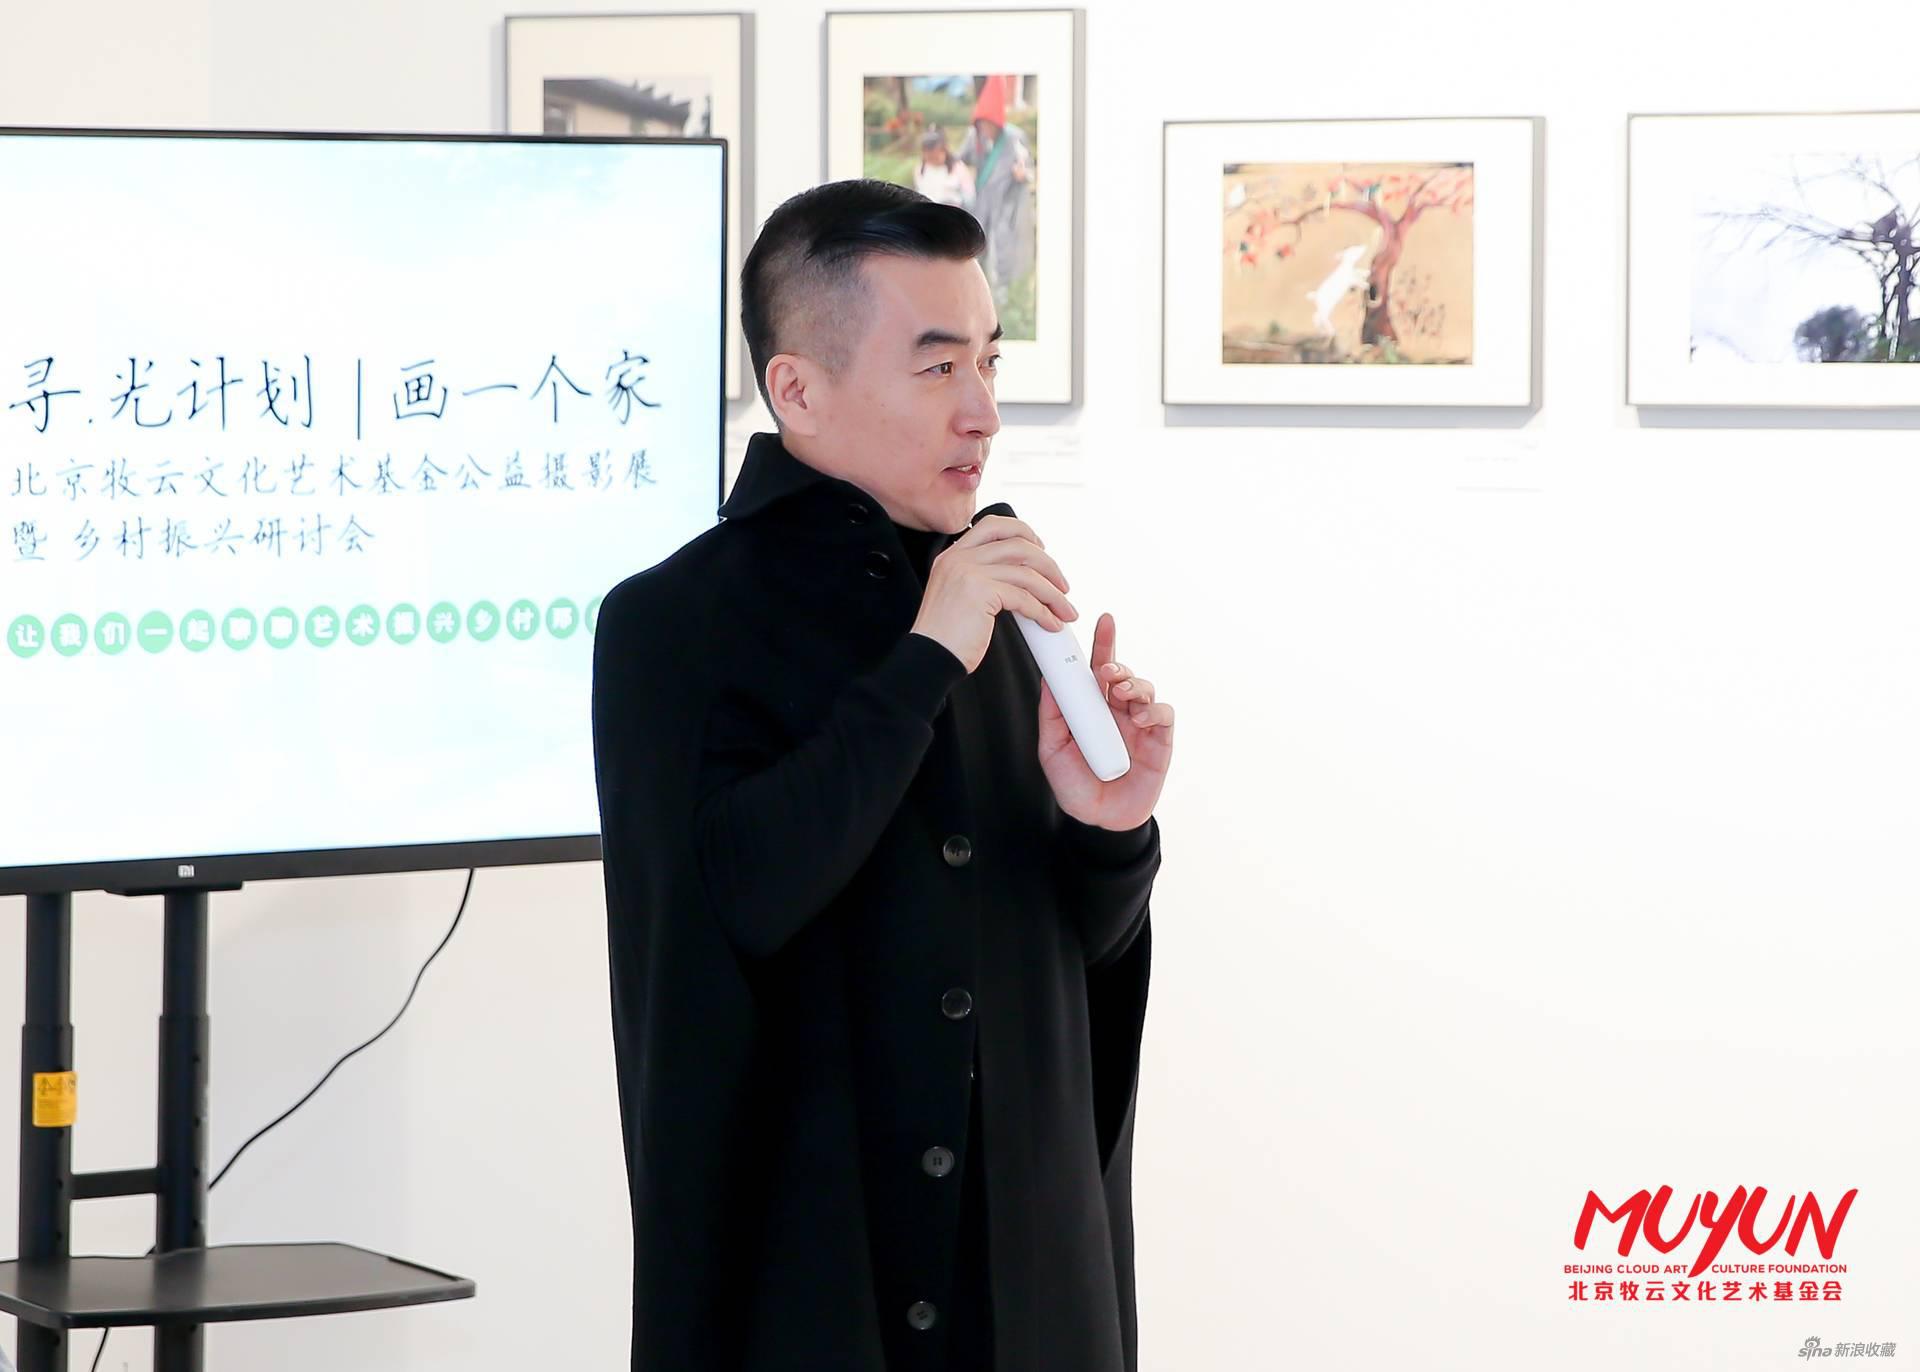 理事长蔡志松代表牧云文化艺术基金会讲话